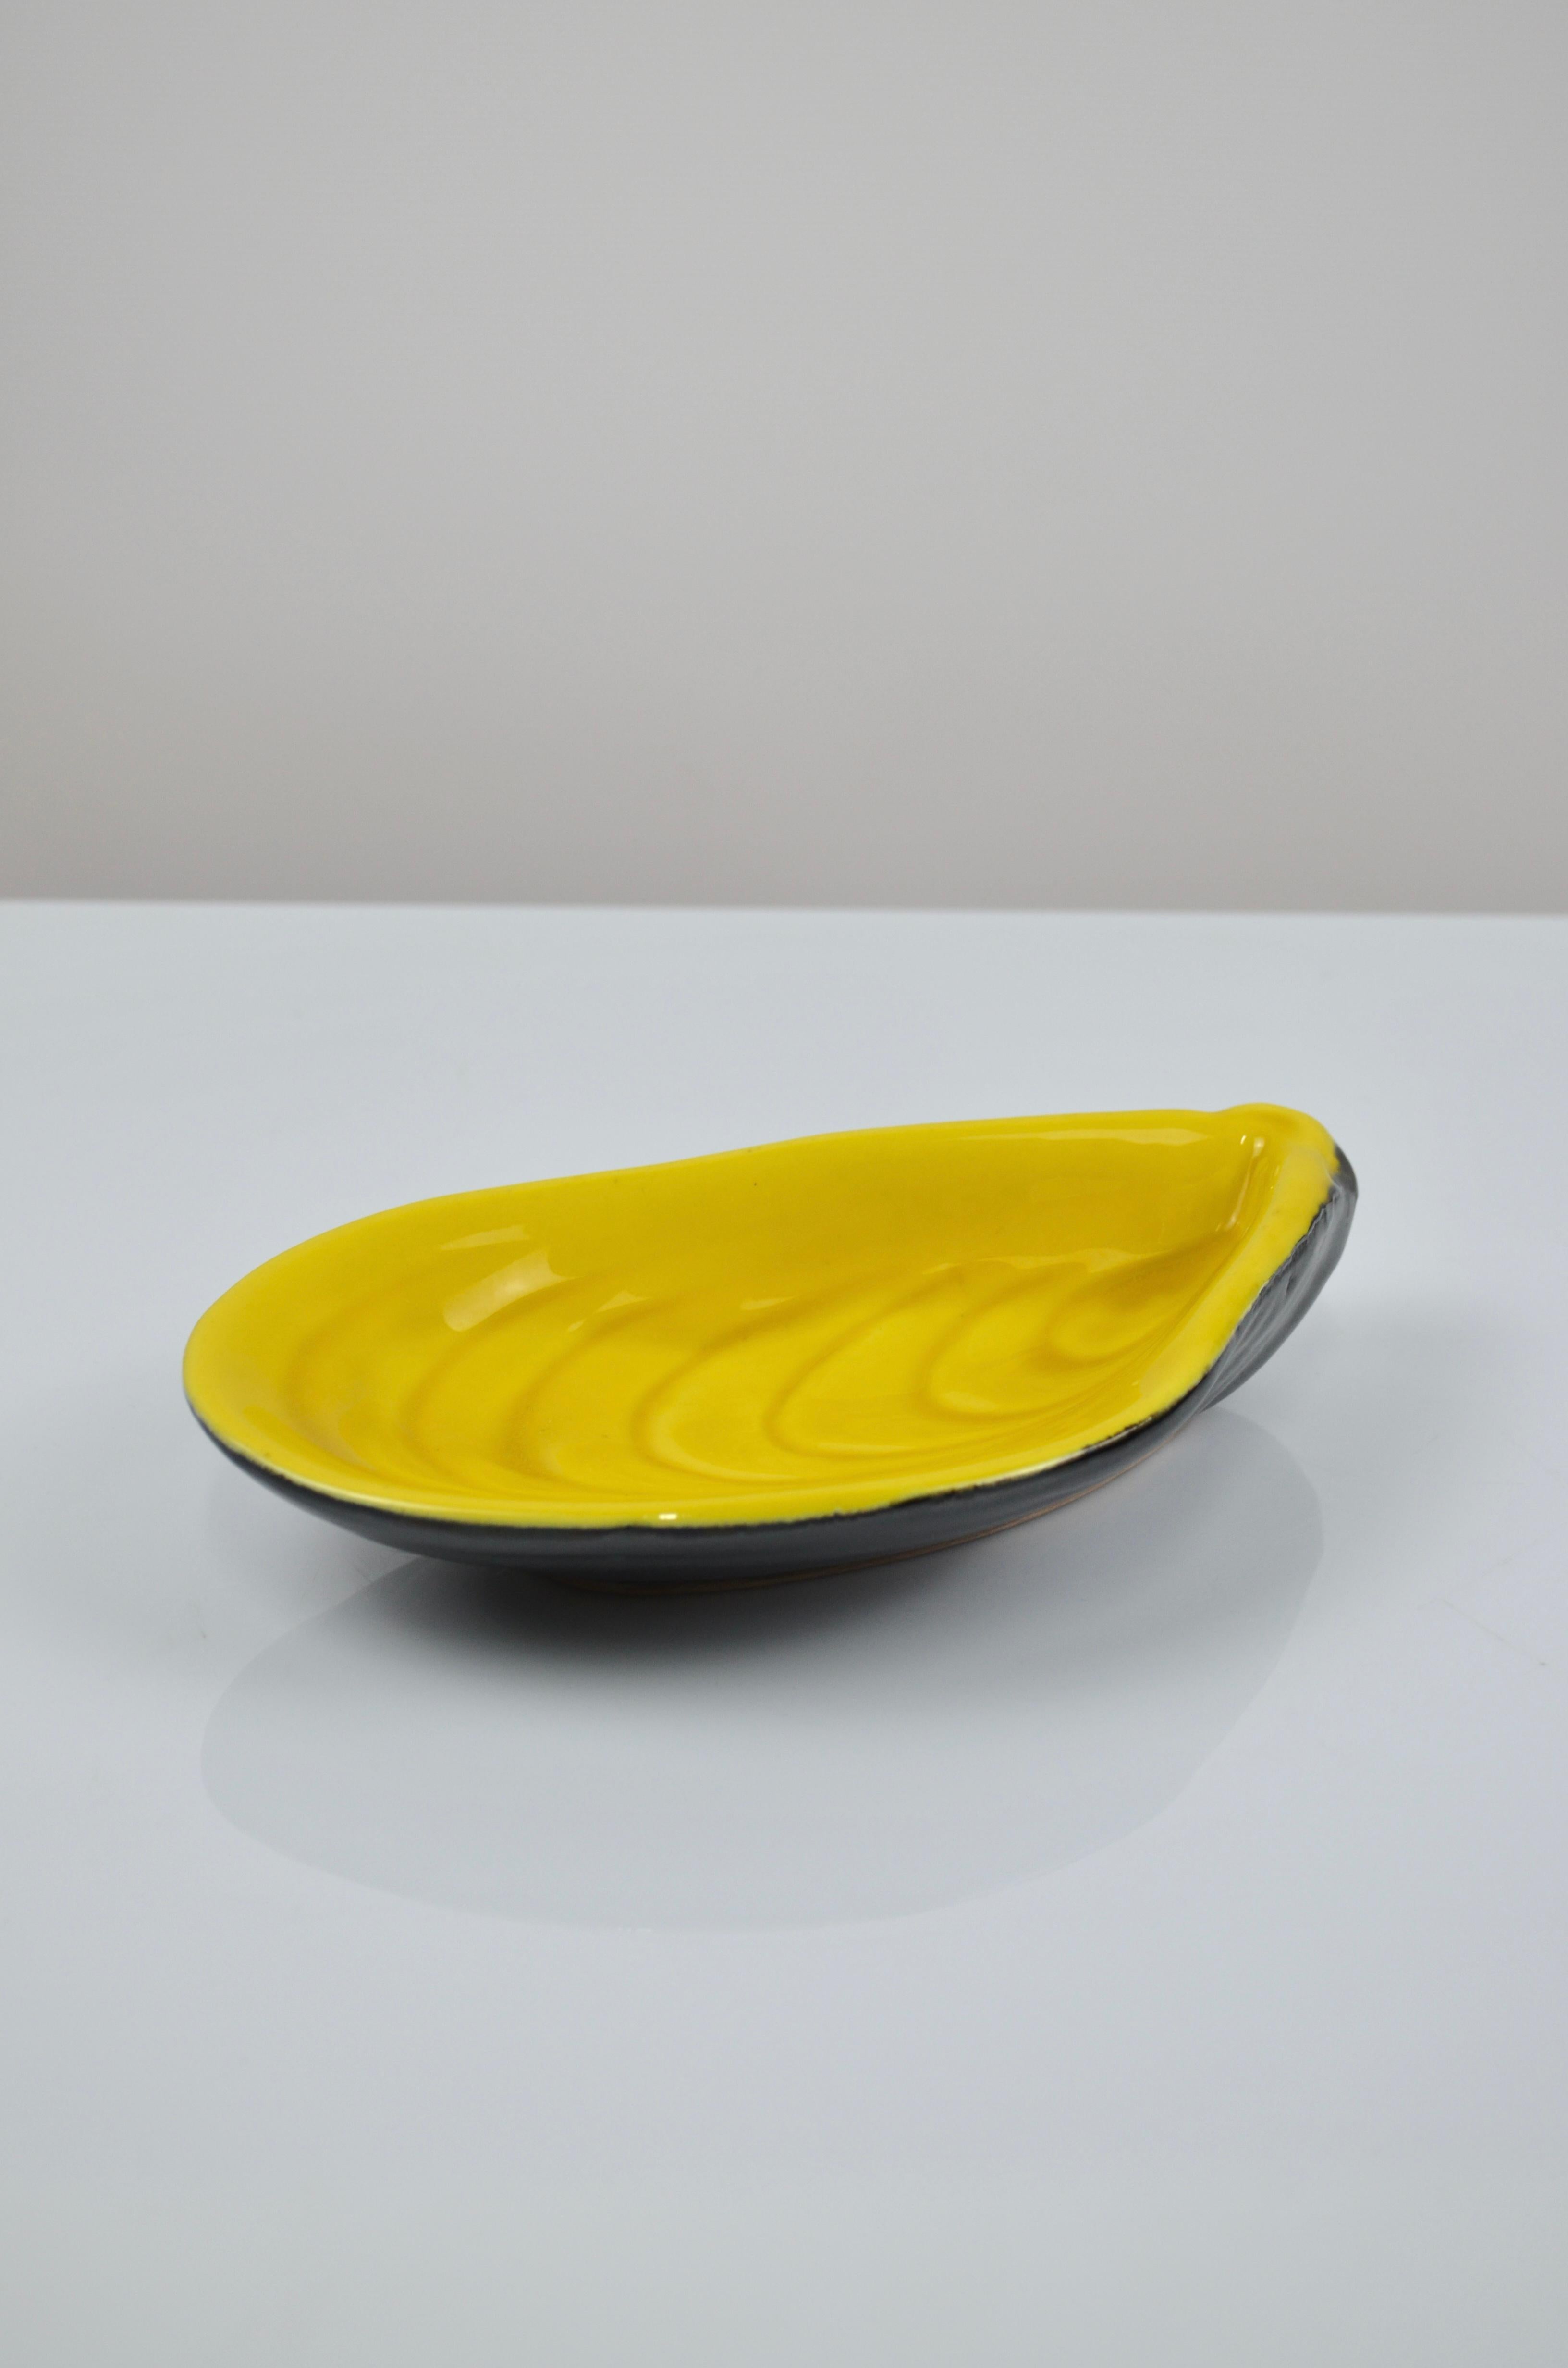 Prächtige leere Keramiktasche in Form einer Muschel, von Albert FERLAY, Vallauris, Frankreich, 50er Jahre
Sehr schöner Farbkontrast zwischen Gelb und Schwarz.
Stück unten signiert